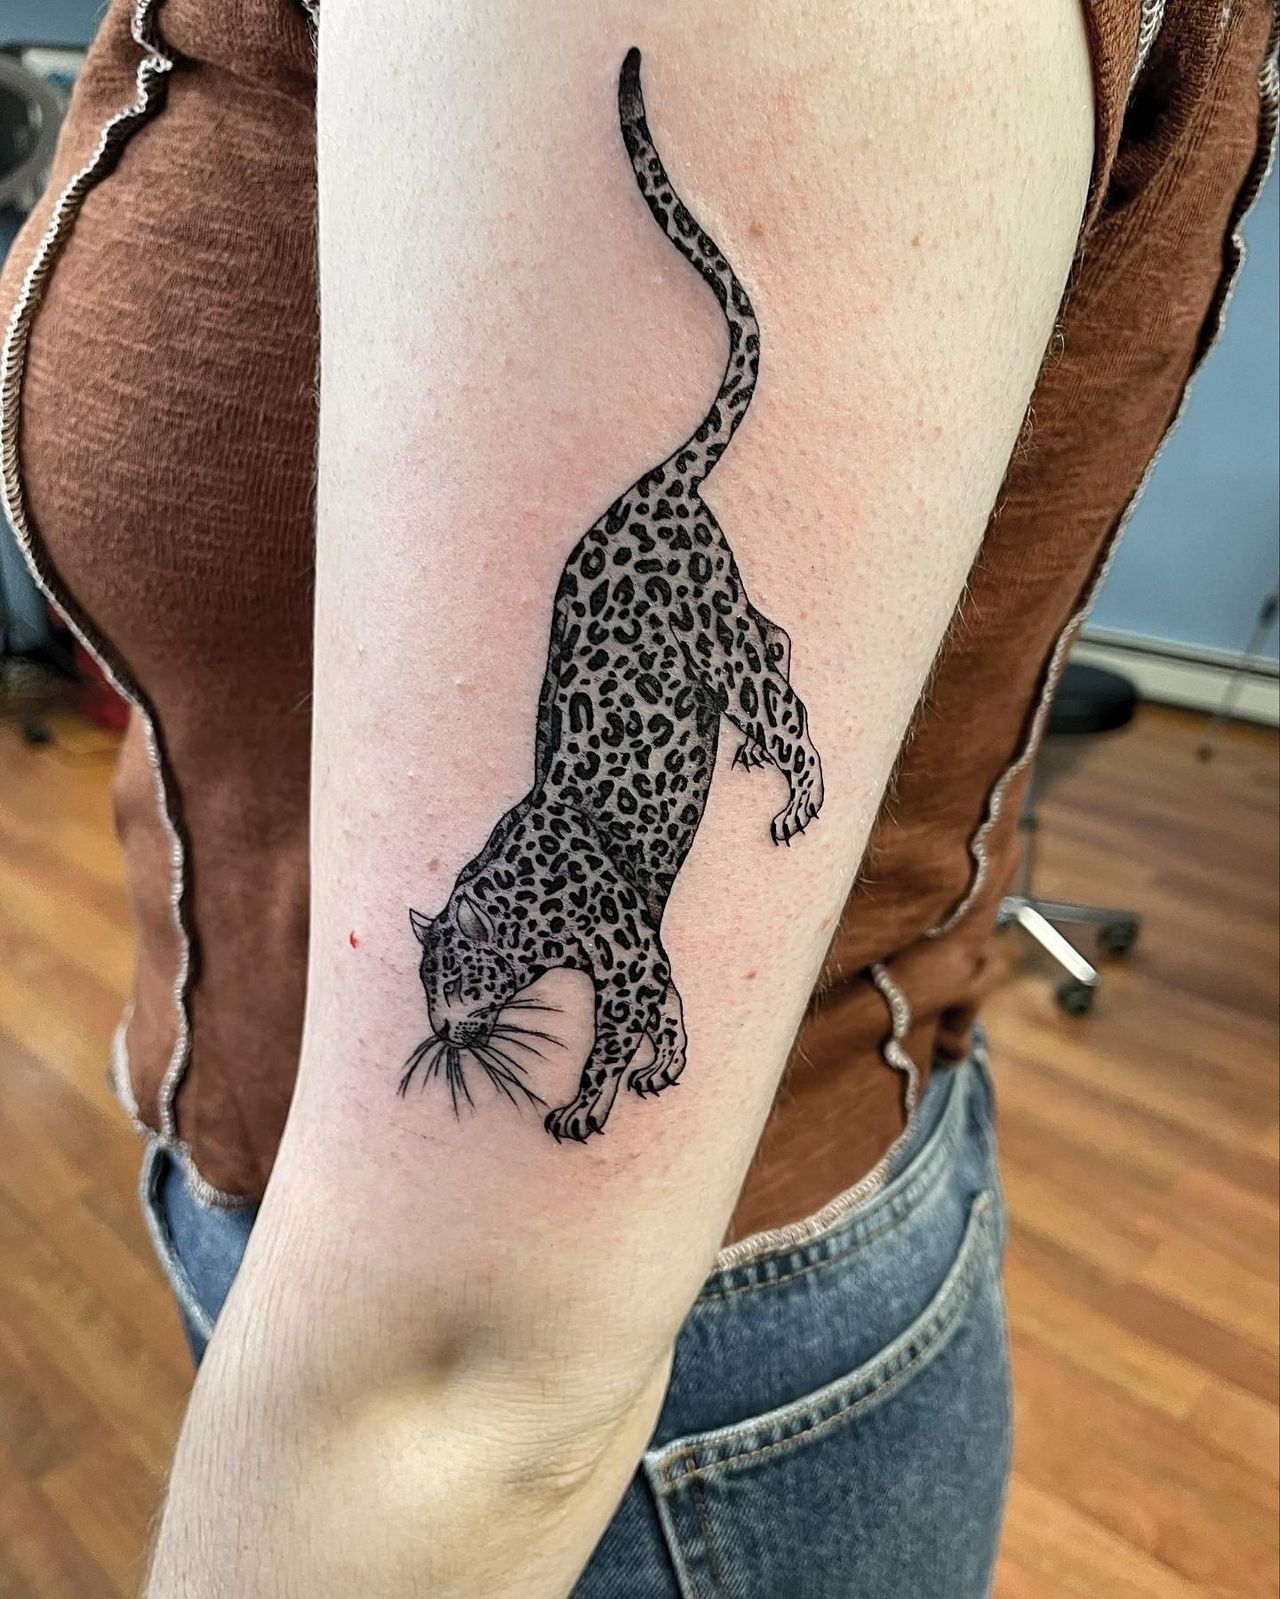 Leopard - Manhattan, NY - Studio 28 Tattoo